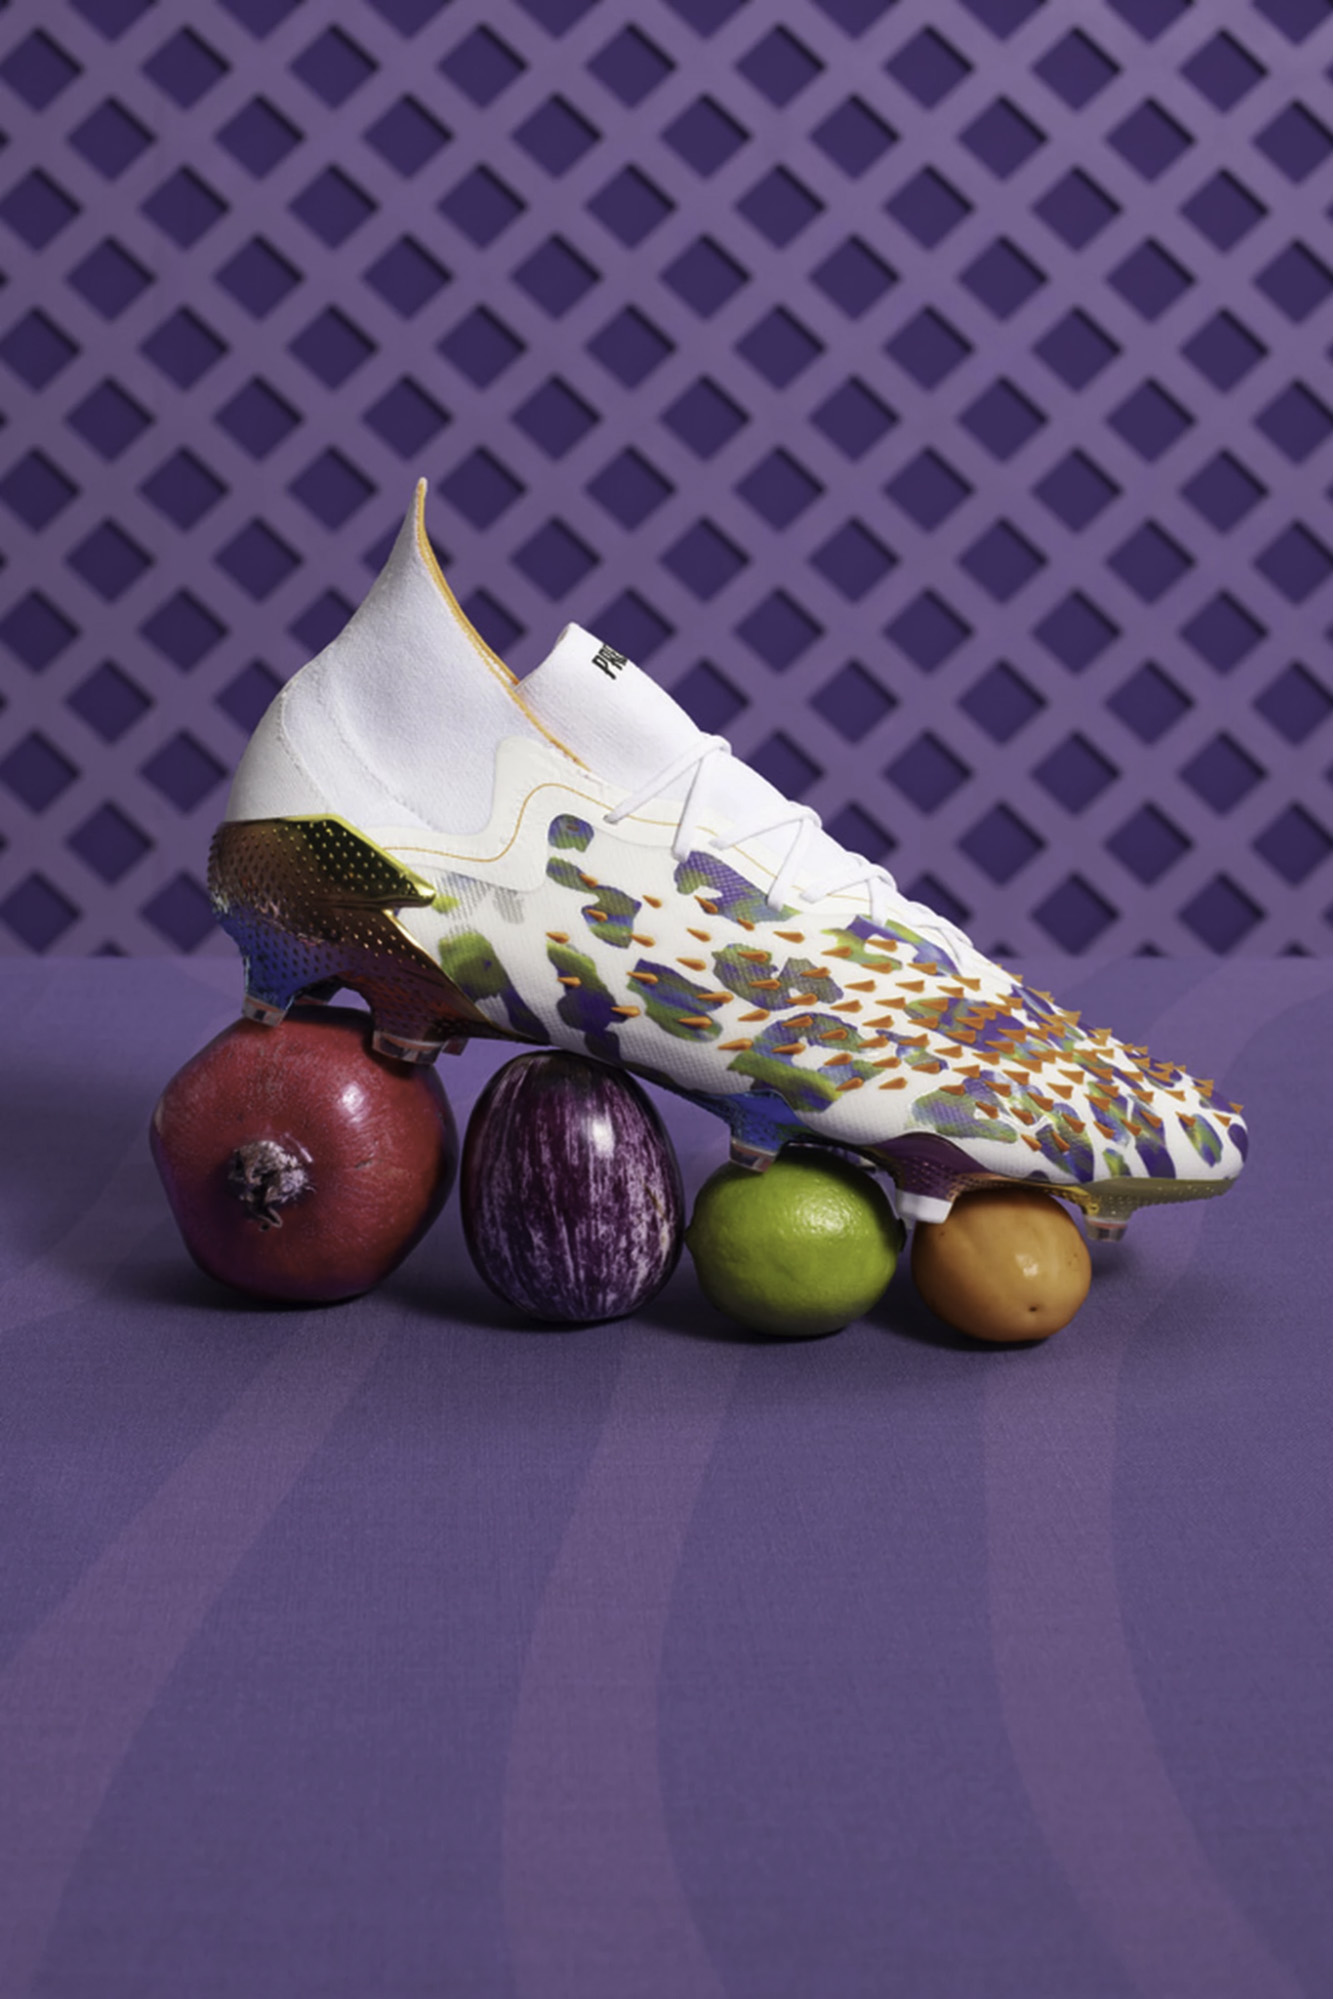 Stella McCartney x Paul Pogba Predator Freak - đôi giày bóng đá 100% thuần chay đầu tiên của adidas